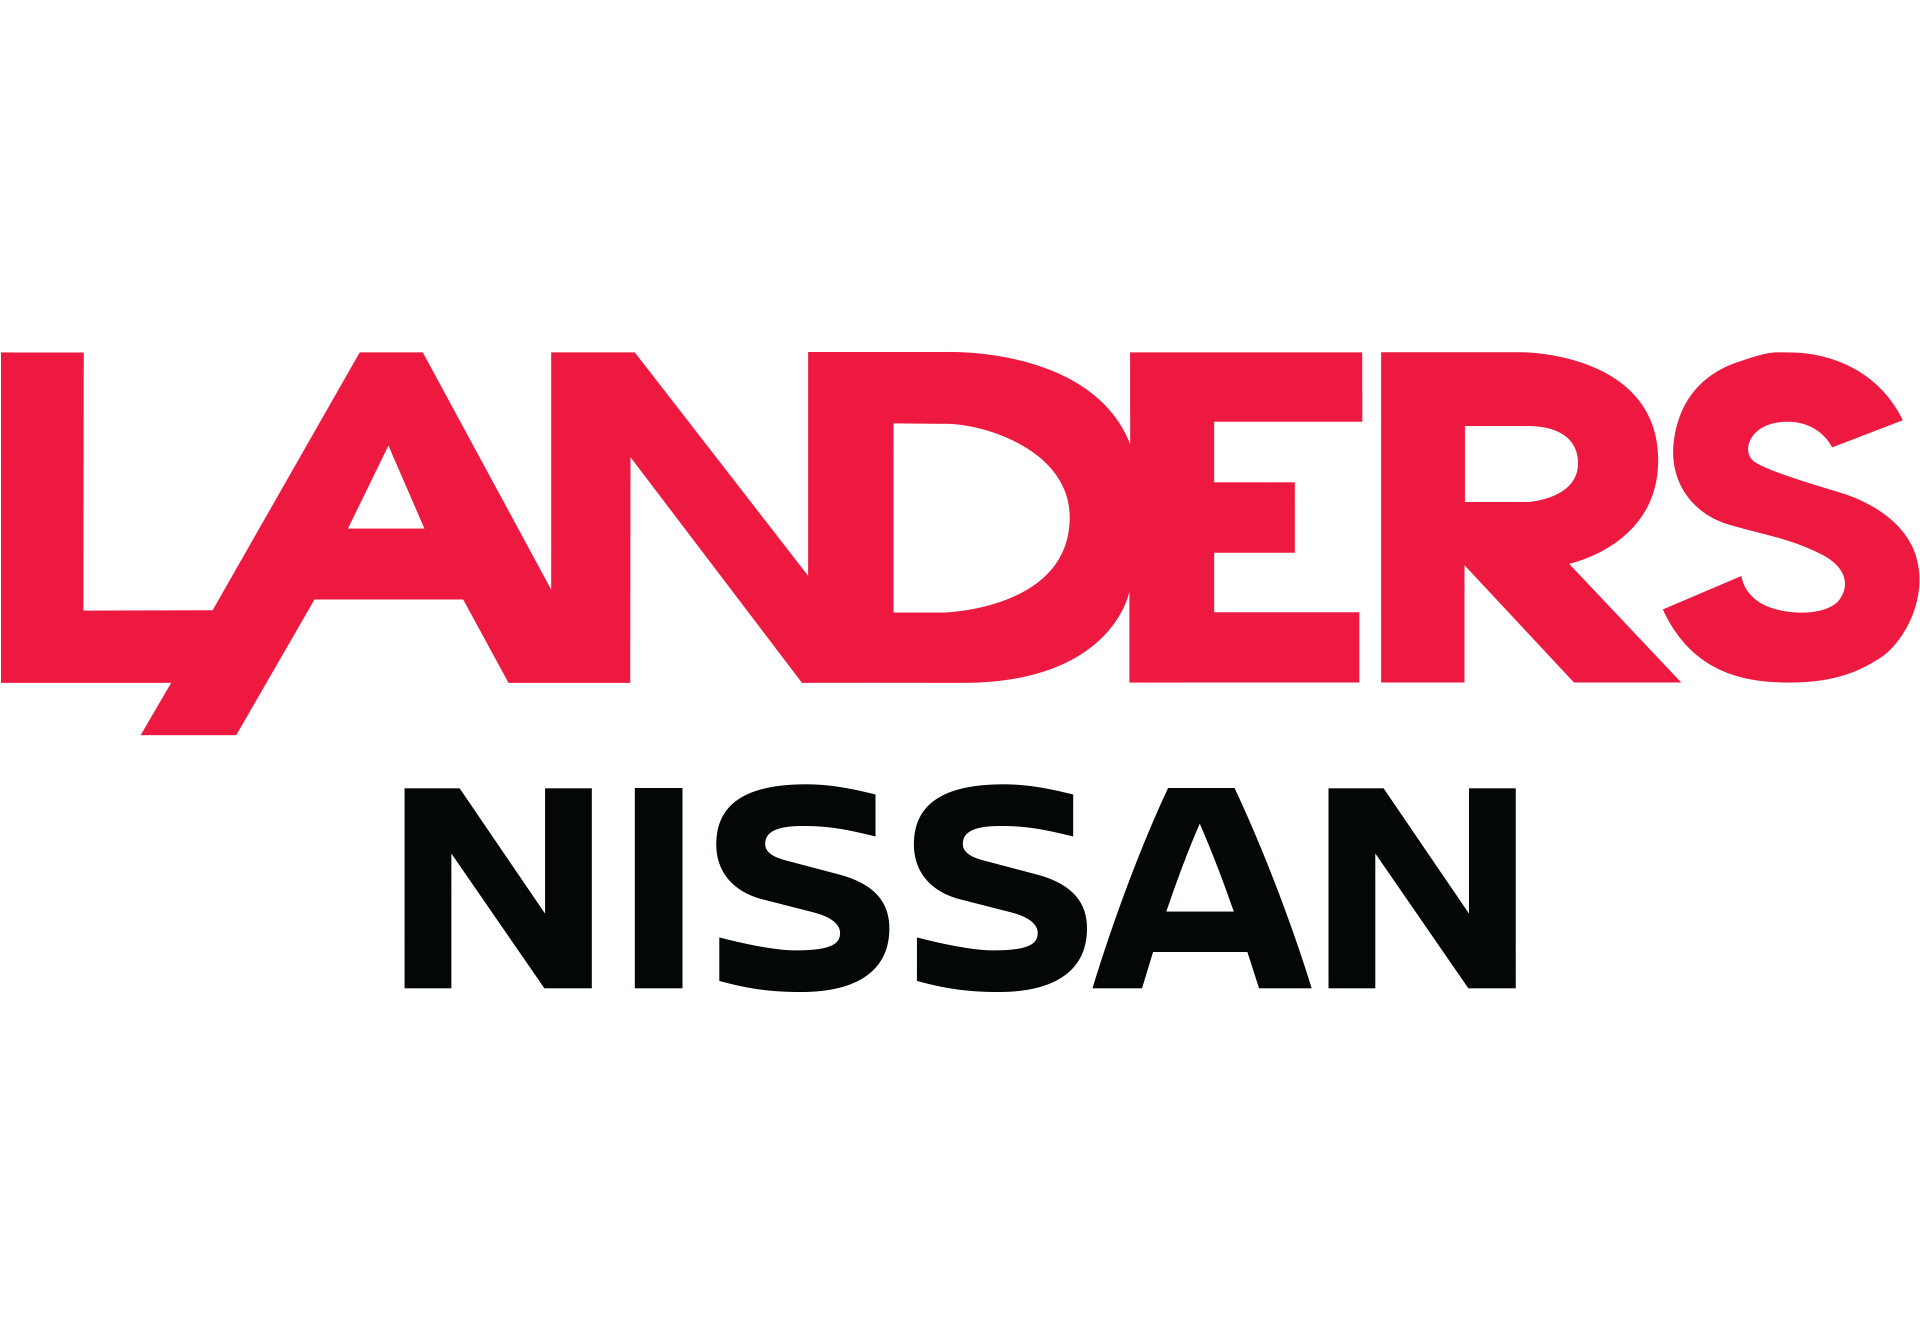 Landers Nissan